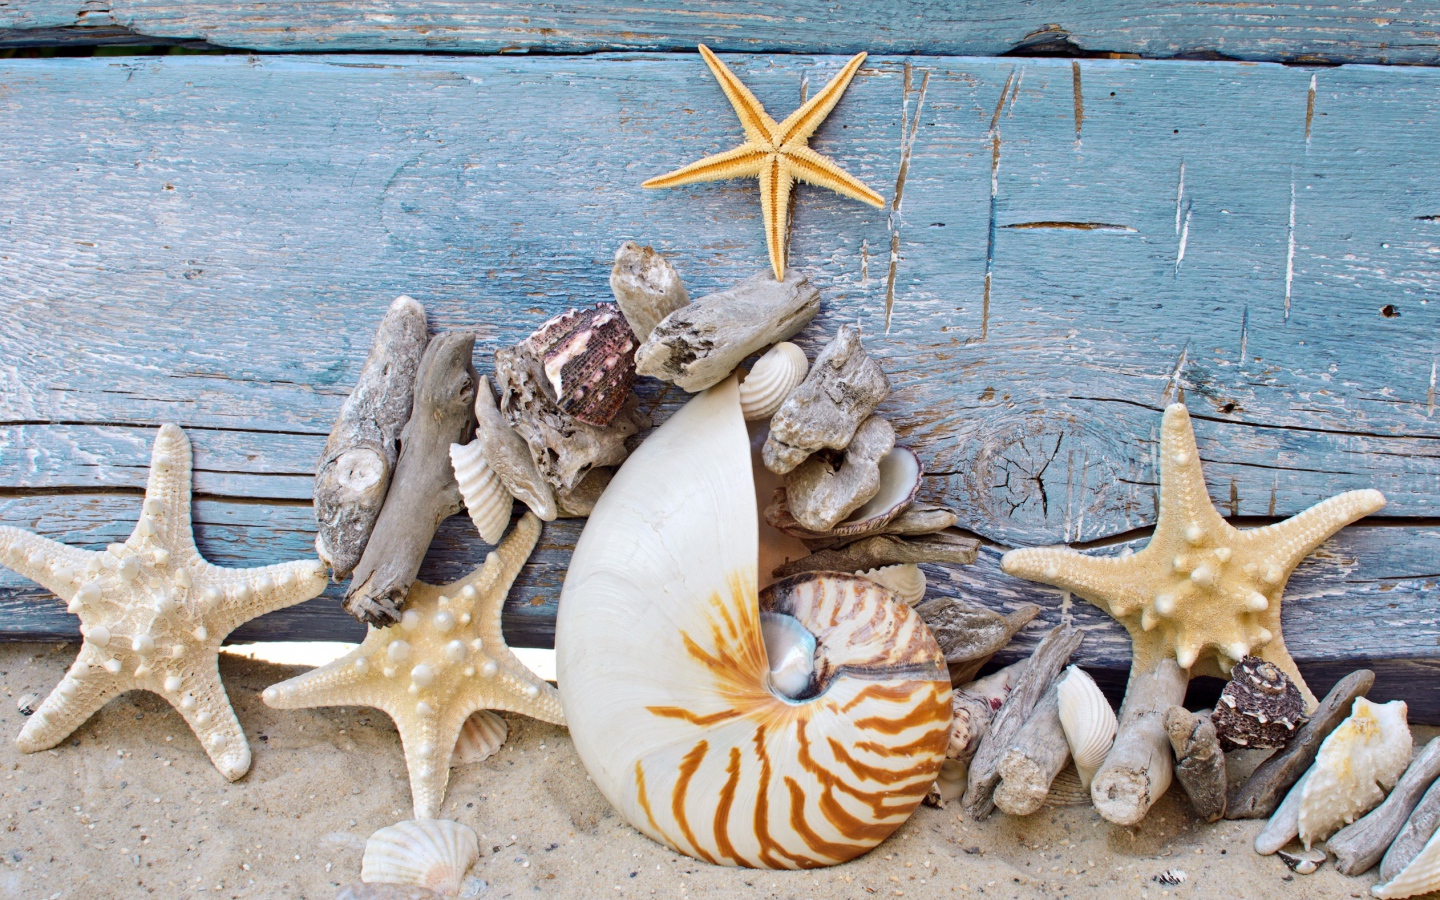 Разные красивые ракушки с морскими звездами на деревянном фоне 